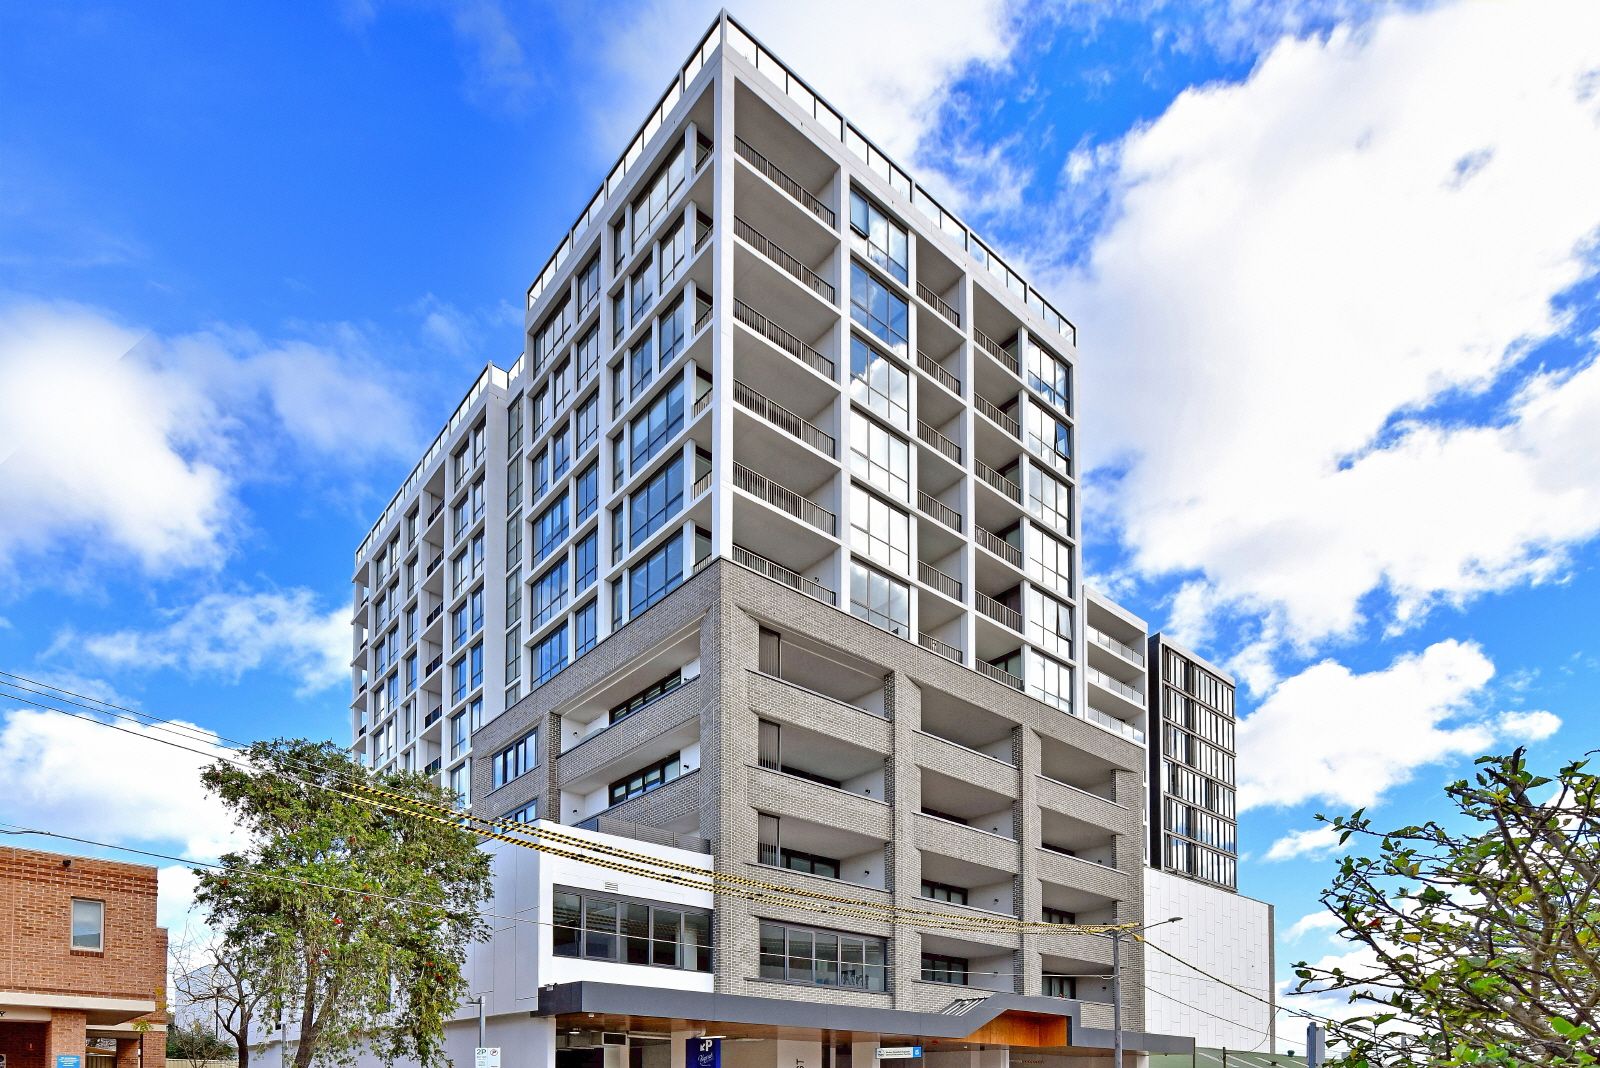 2 bedrooms Apartment / Unit / Flat in B901/3 Blake Street KOGARAH NSW, 2217